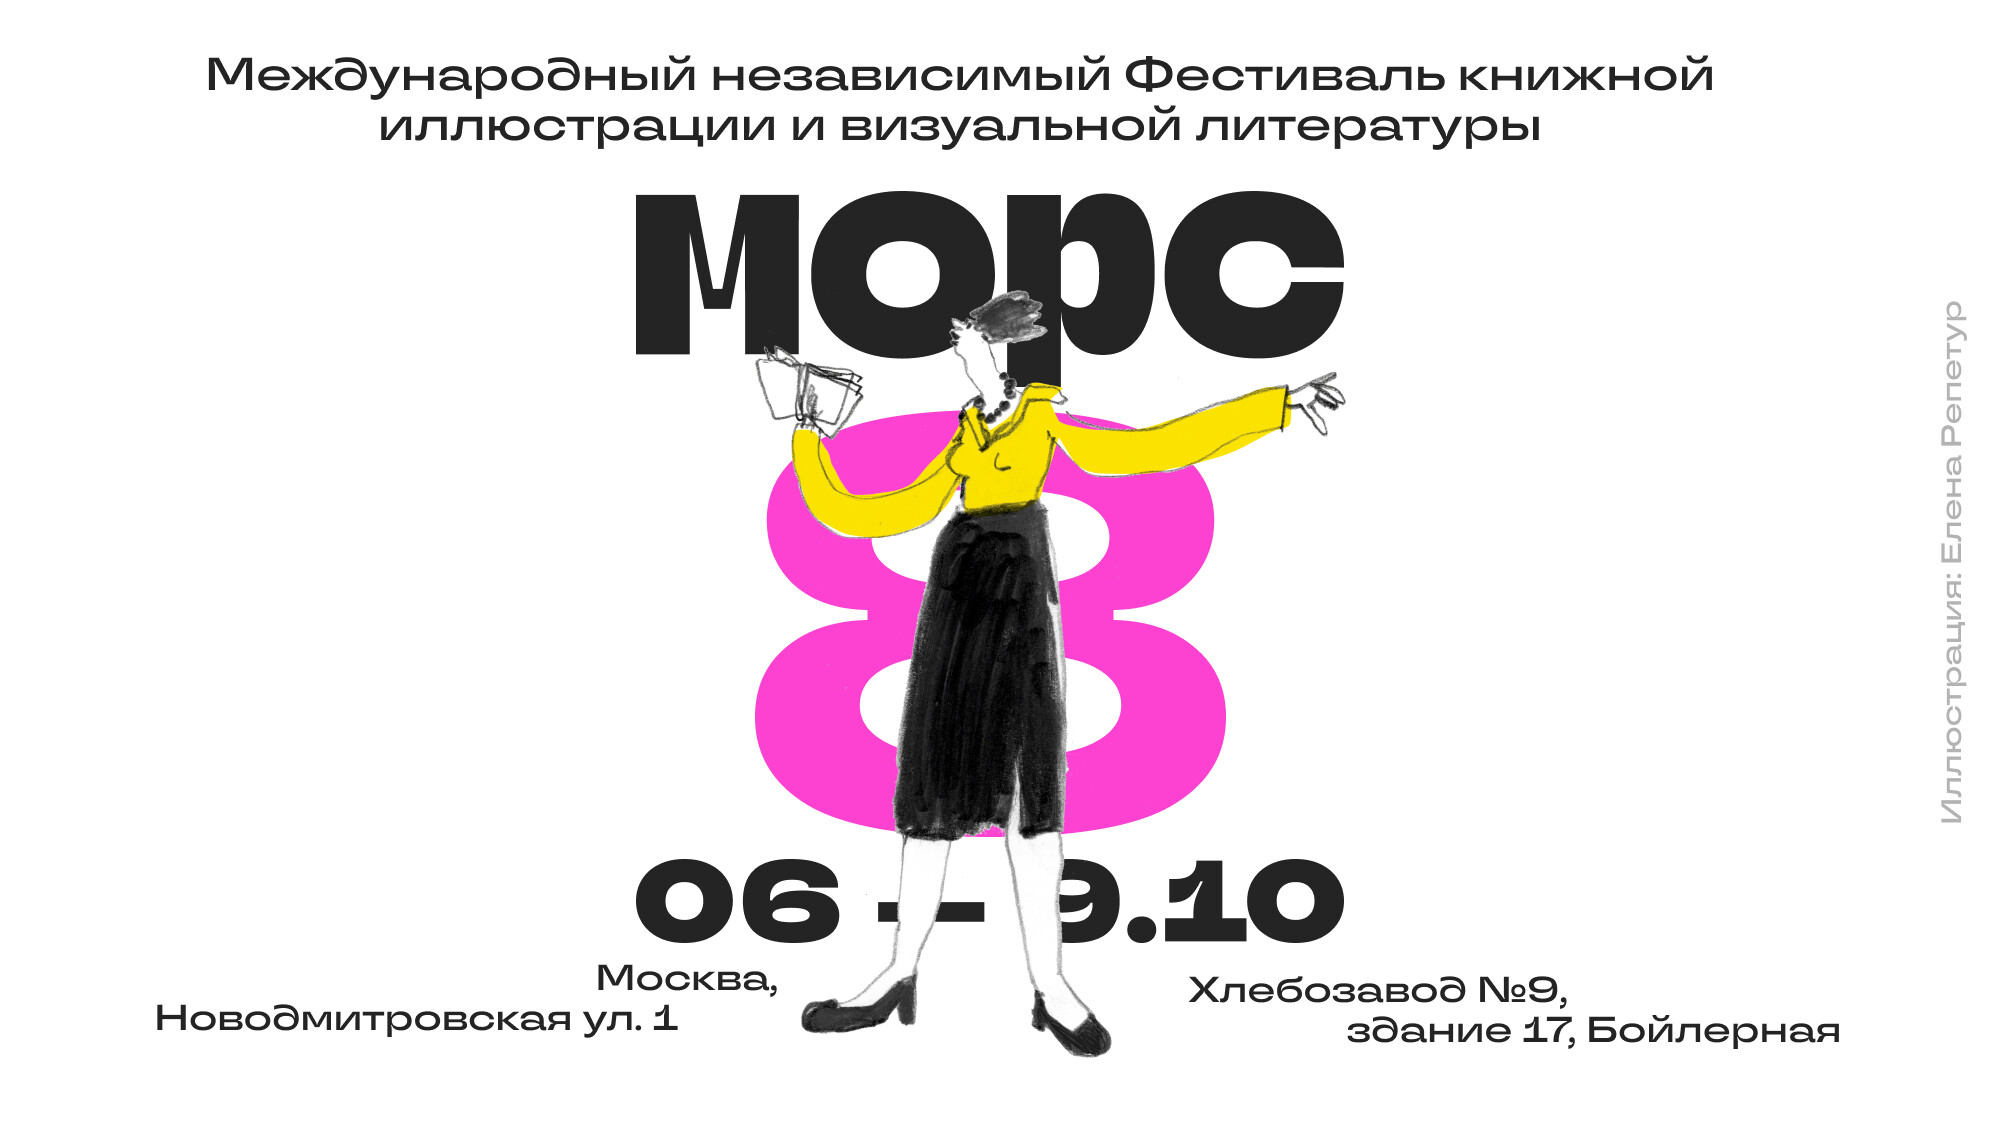 Международный независимый фестиваль книжной иллюстрации «МОРС» пройдет с 6 по 9 октября 2022 года в Москве